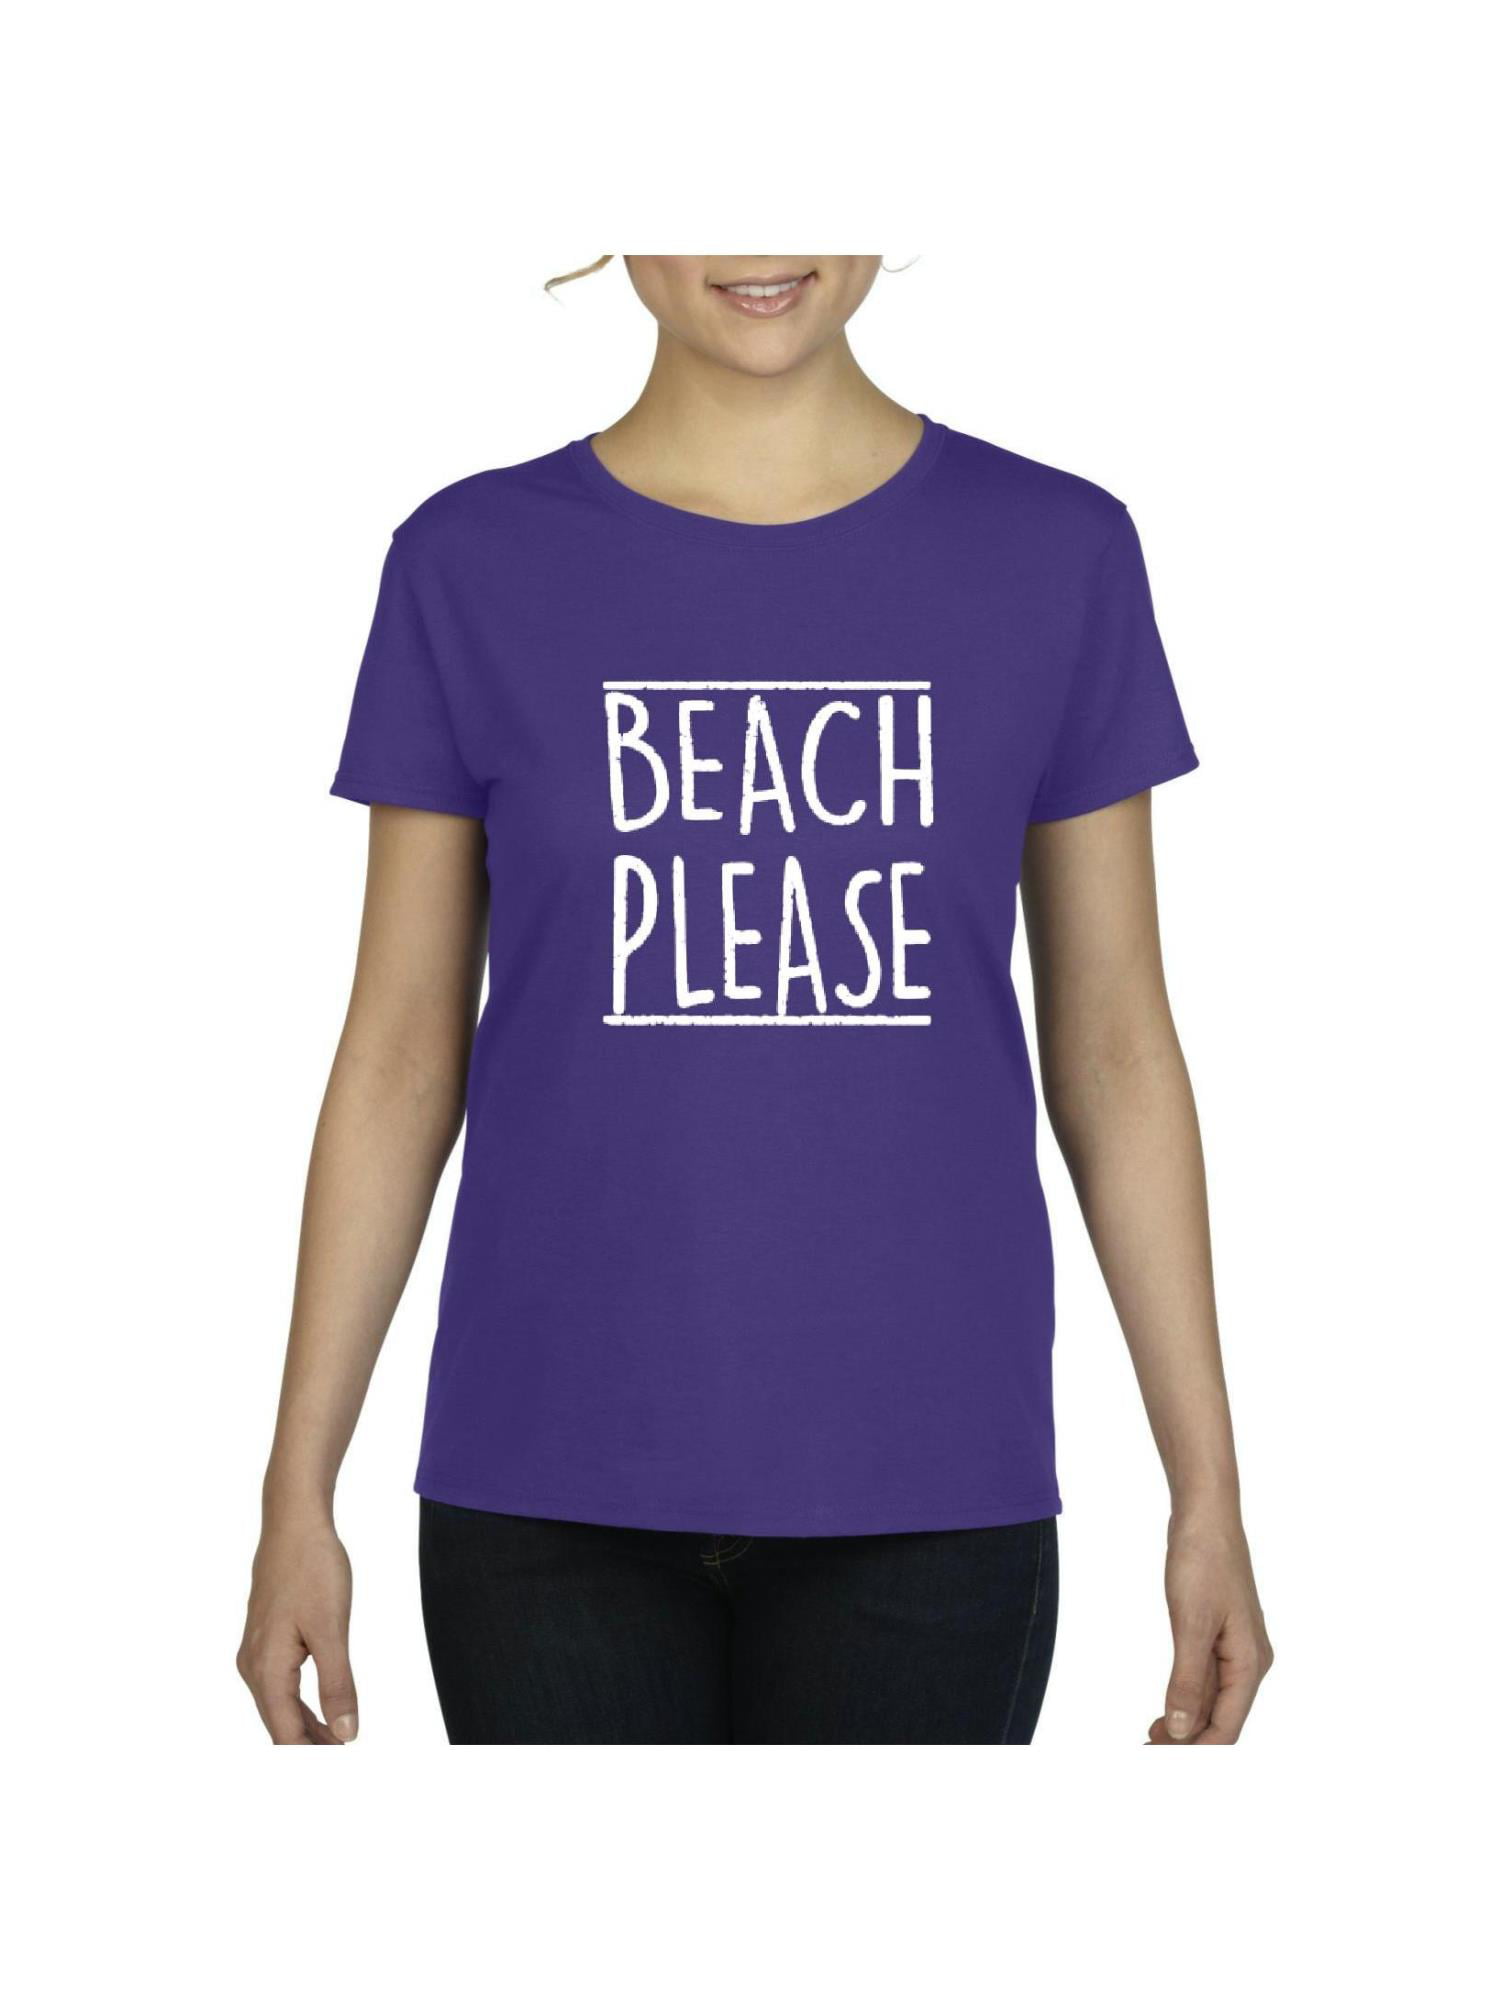 IWPF - Womens Beach Please Short Sleeve T-Shirt - Walmart.com - Walmart.com